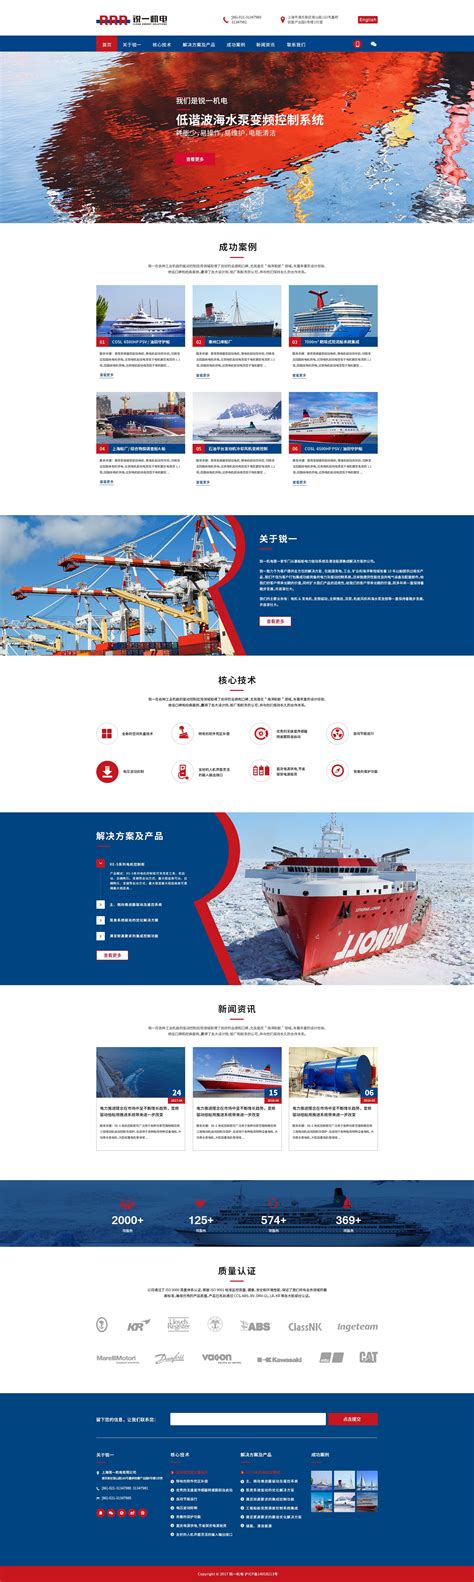 瑞晨环保科技公司响应式网站策划设计建设-上海网站设计建设公司-尚略广告